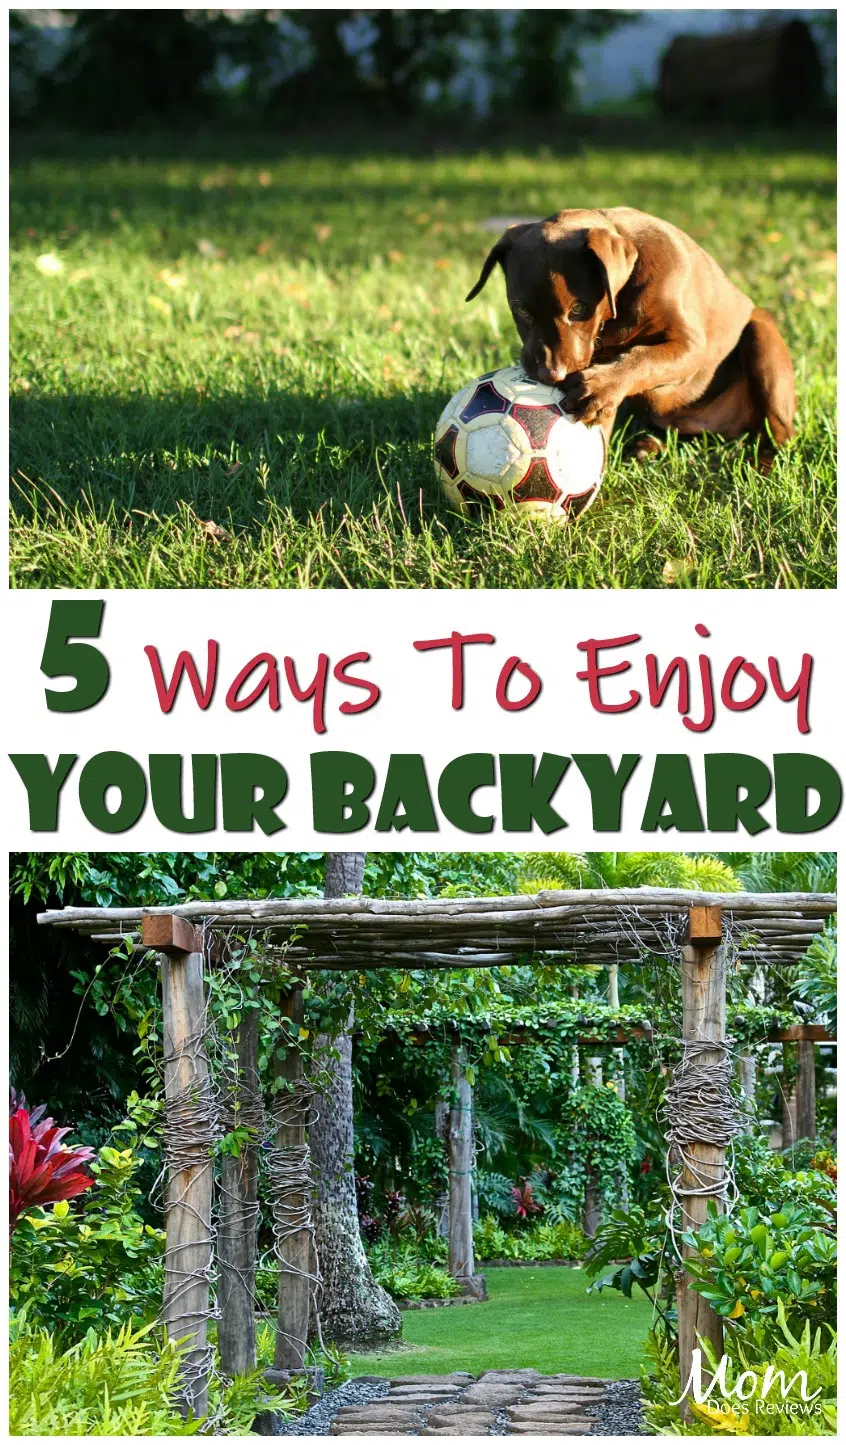 5 Ways To Enjoy Your Backyard #home #backyard #fun #familyfun